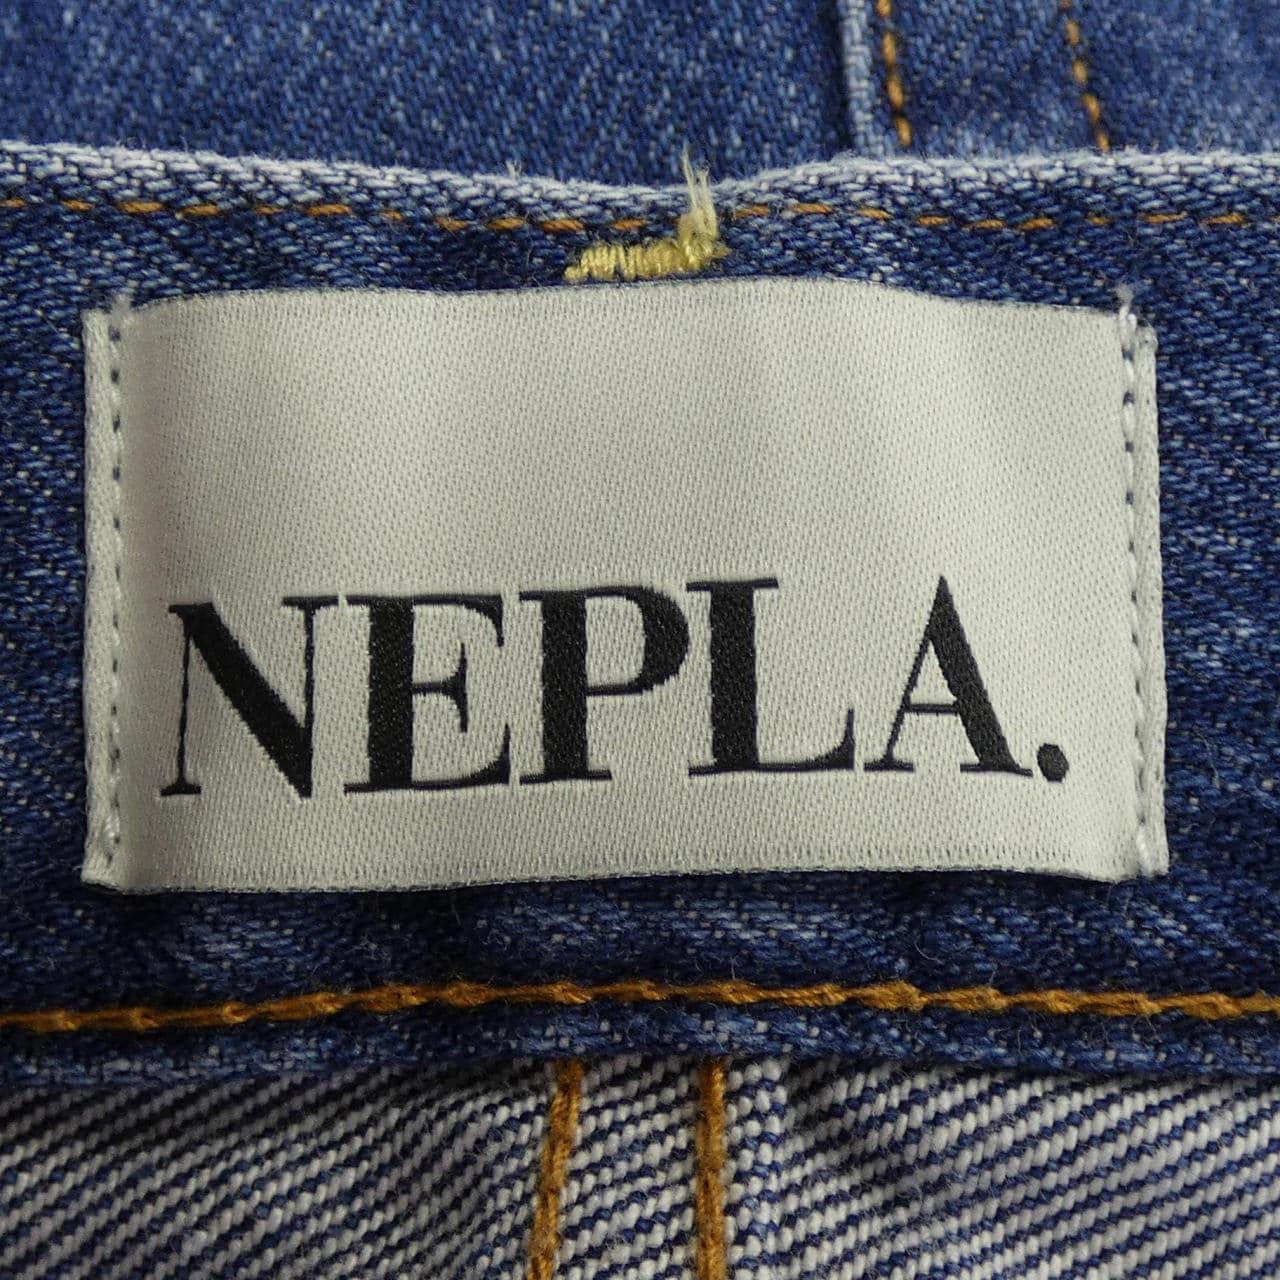 NEPLA jeans